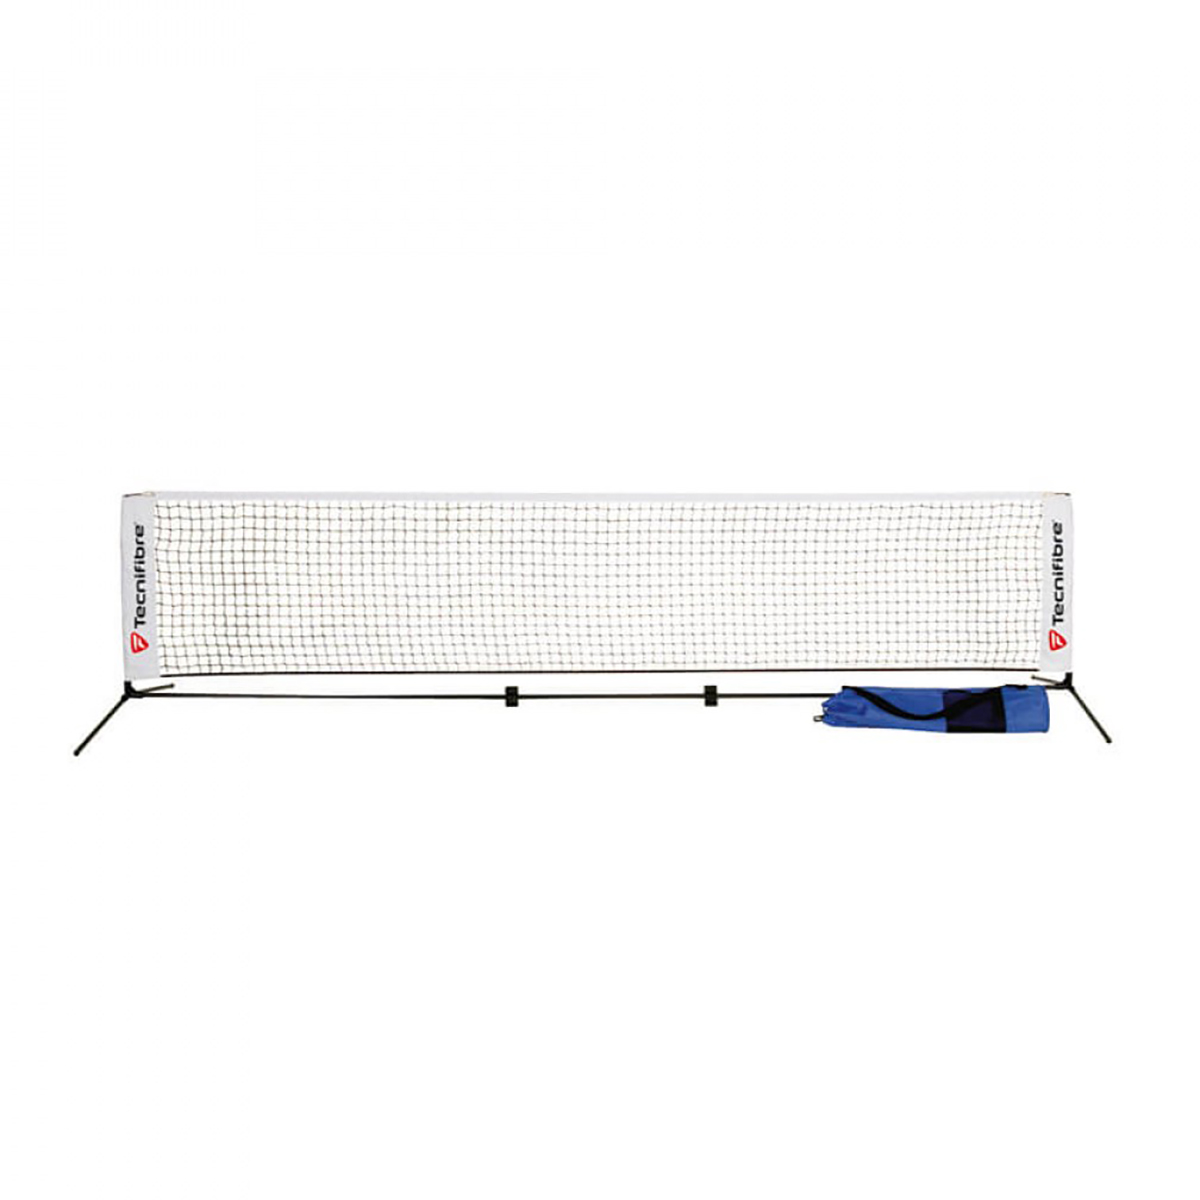 Купить сетку для тенниса. Мини-сетка для теннисного корта 6м Toolz. Теннисная сетка head детская 10 ft. Сетка для детского тенниса 6 метровая. Разборная сетка для большого тенниса.